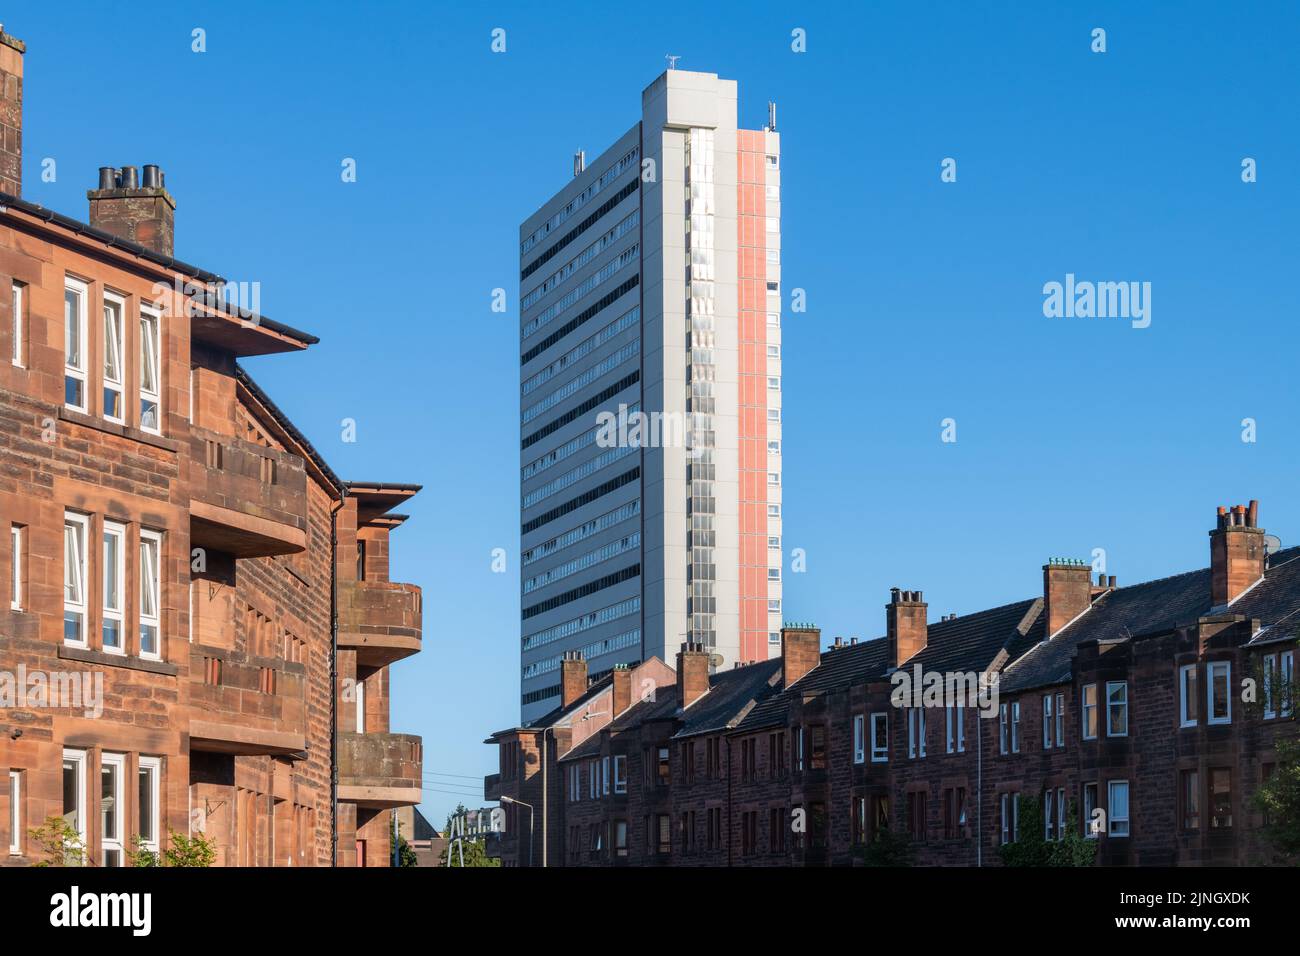 Anniesland COURT - Una torre residencial catalogada como brutalista junto a los edificios de viviendas tradicionales de arenisca roja, Anniesland, Glasgow, Escocia, Reino Unido Foto de stock